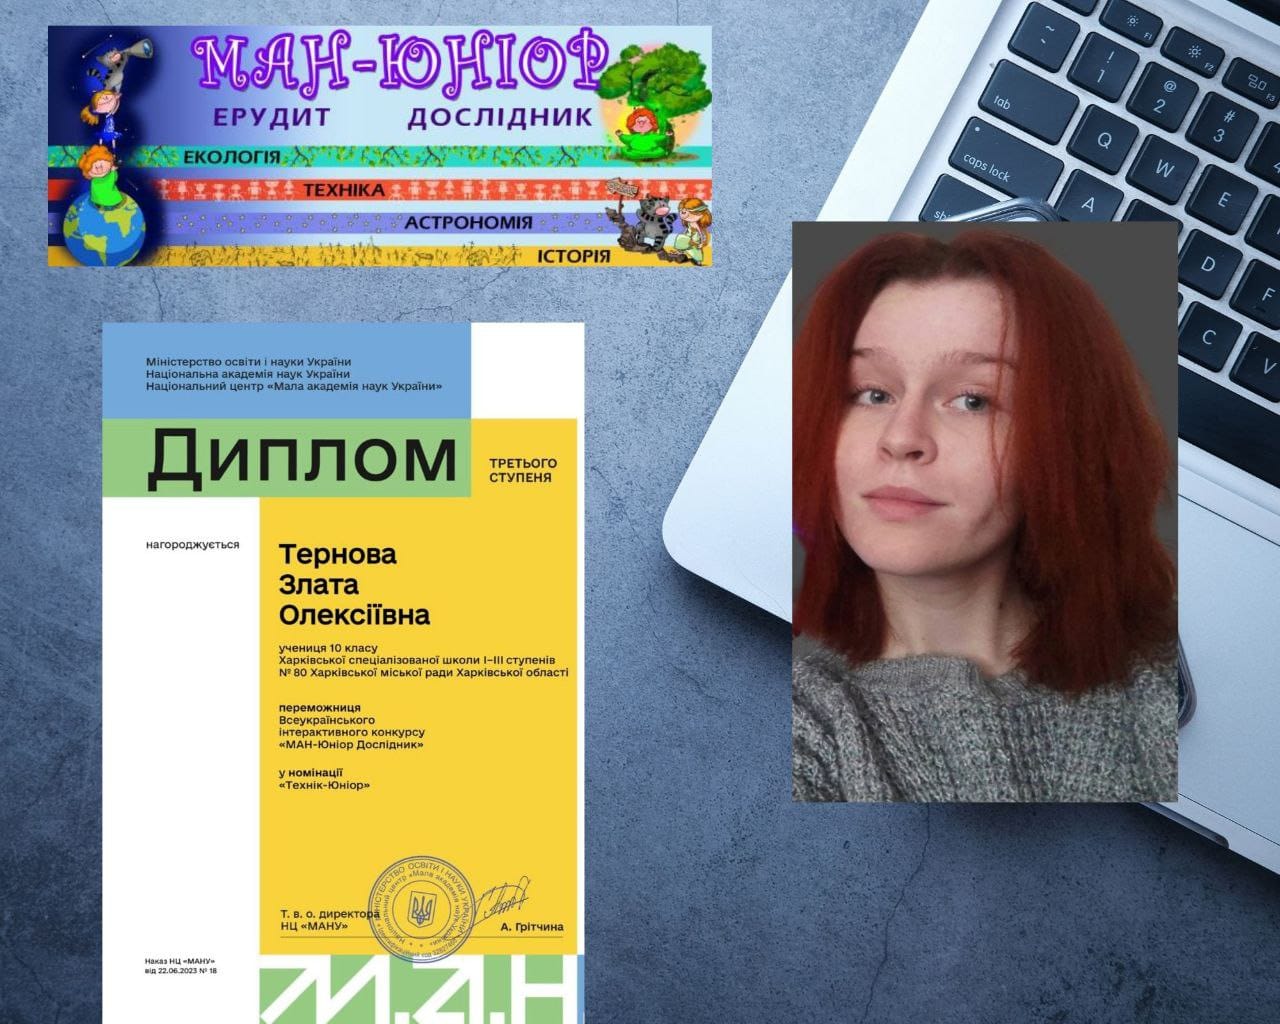 Перемогла на Всеукраїнському науковому конкурсі харківська школярка